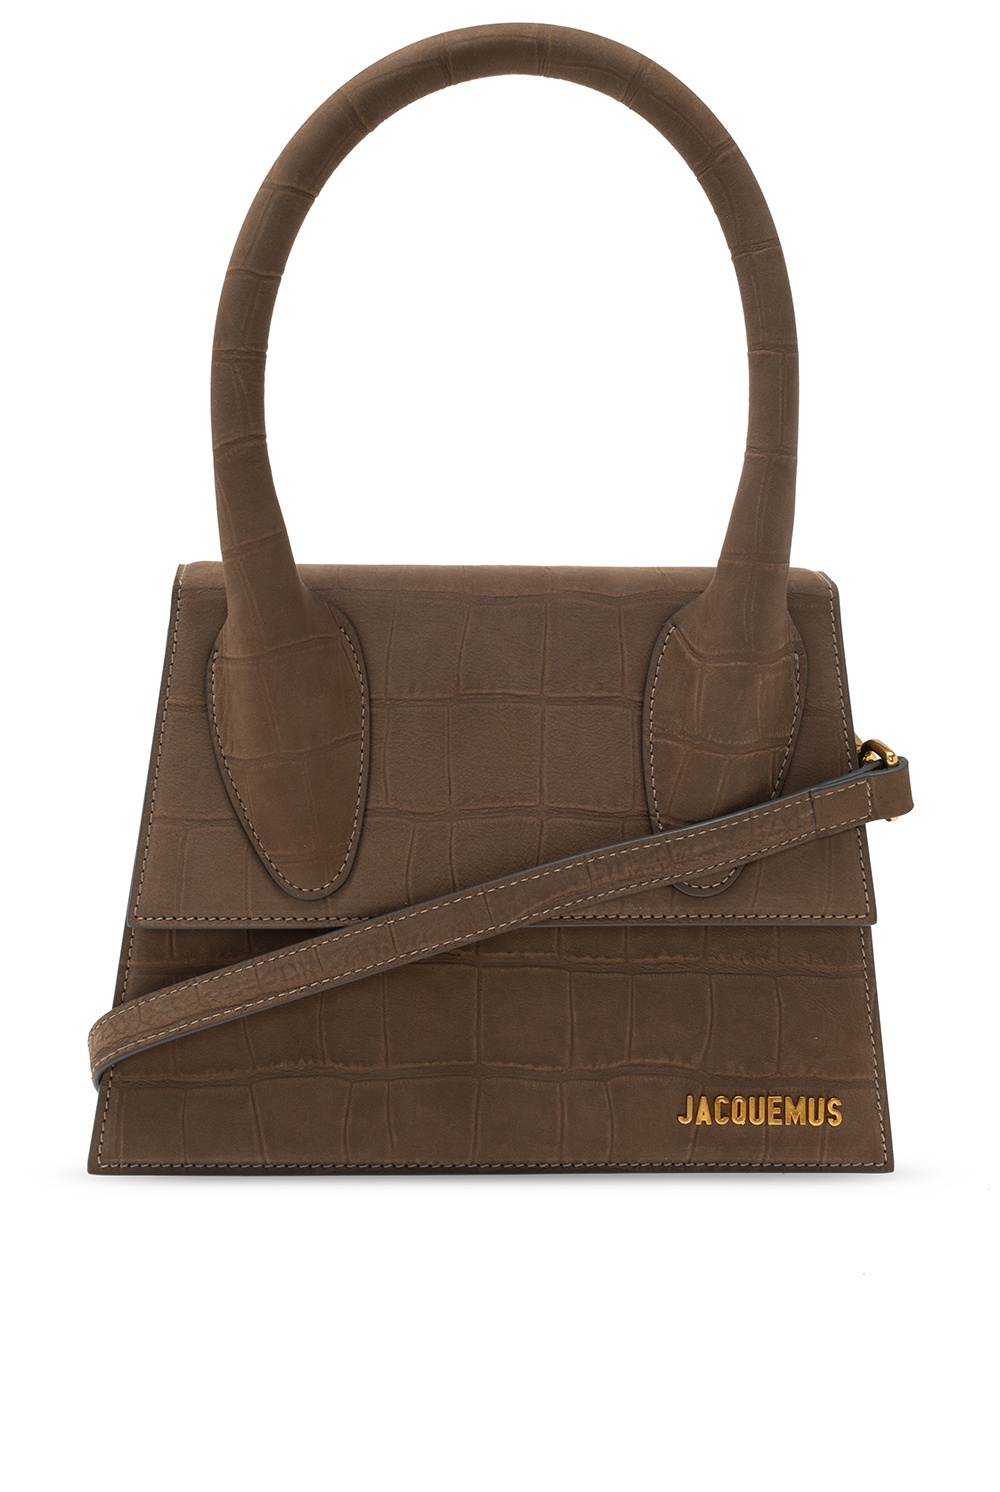 Jacquemus 'Le Grand Chiquito' shoulder bag | Women's Bags | Vitkac